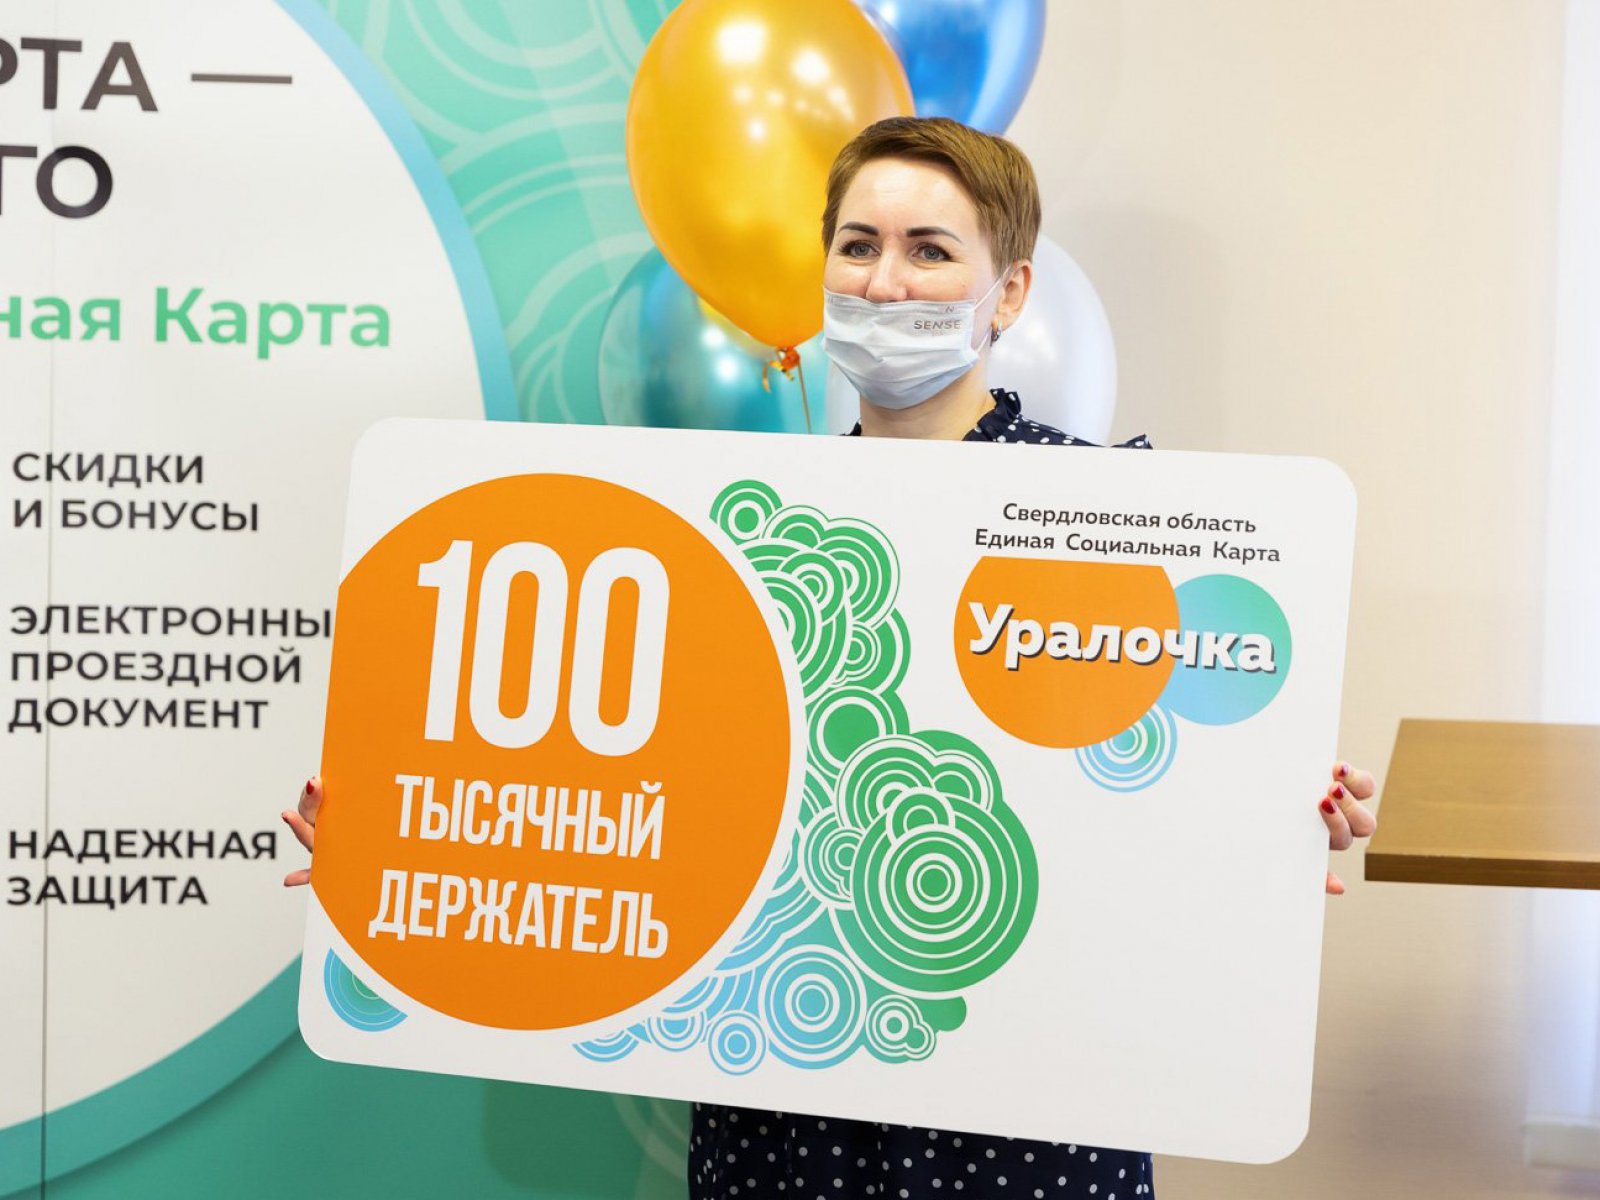 Юбилейную 100-тысячную Единую социальную карту оформили в Свердловской области